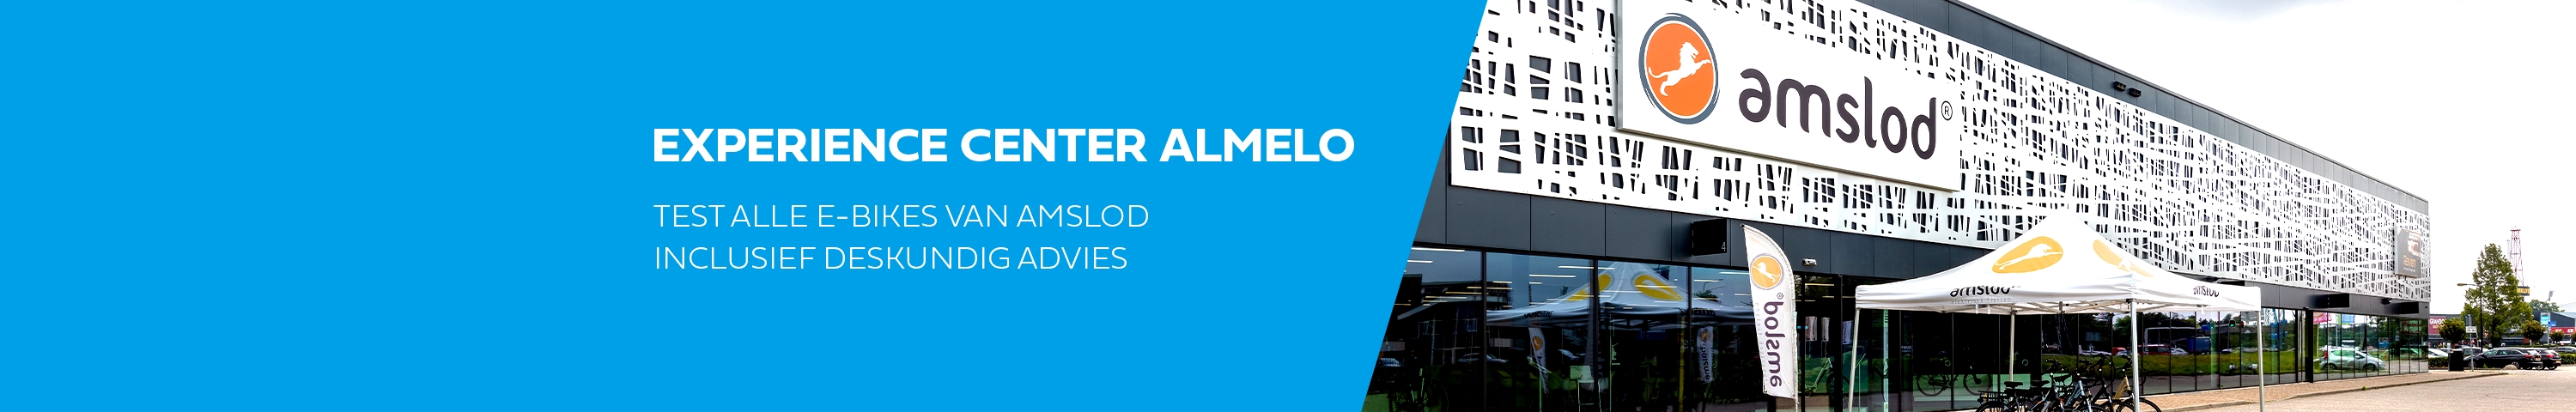 Almelo1-Hero-Desktop